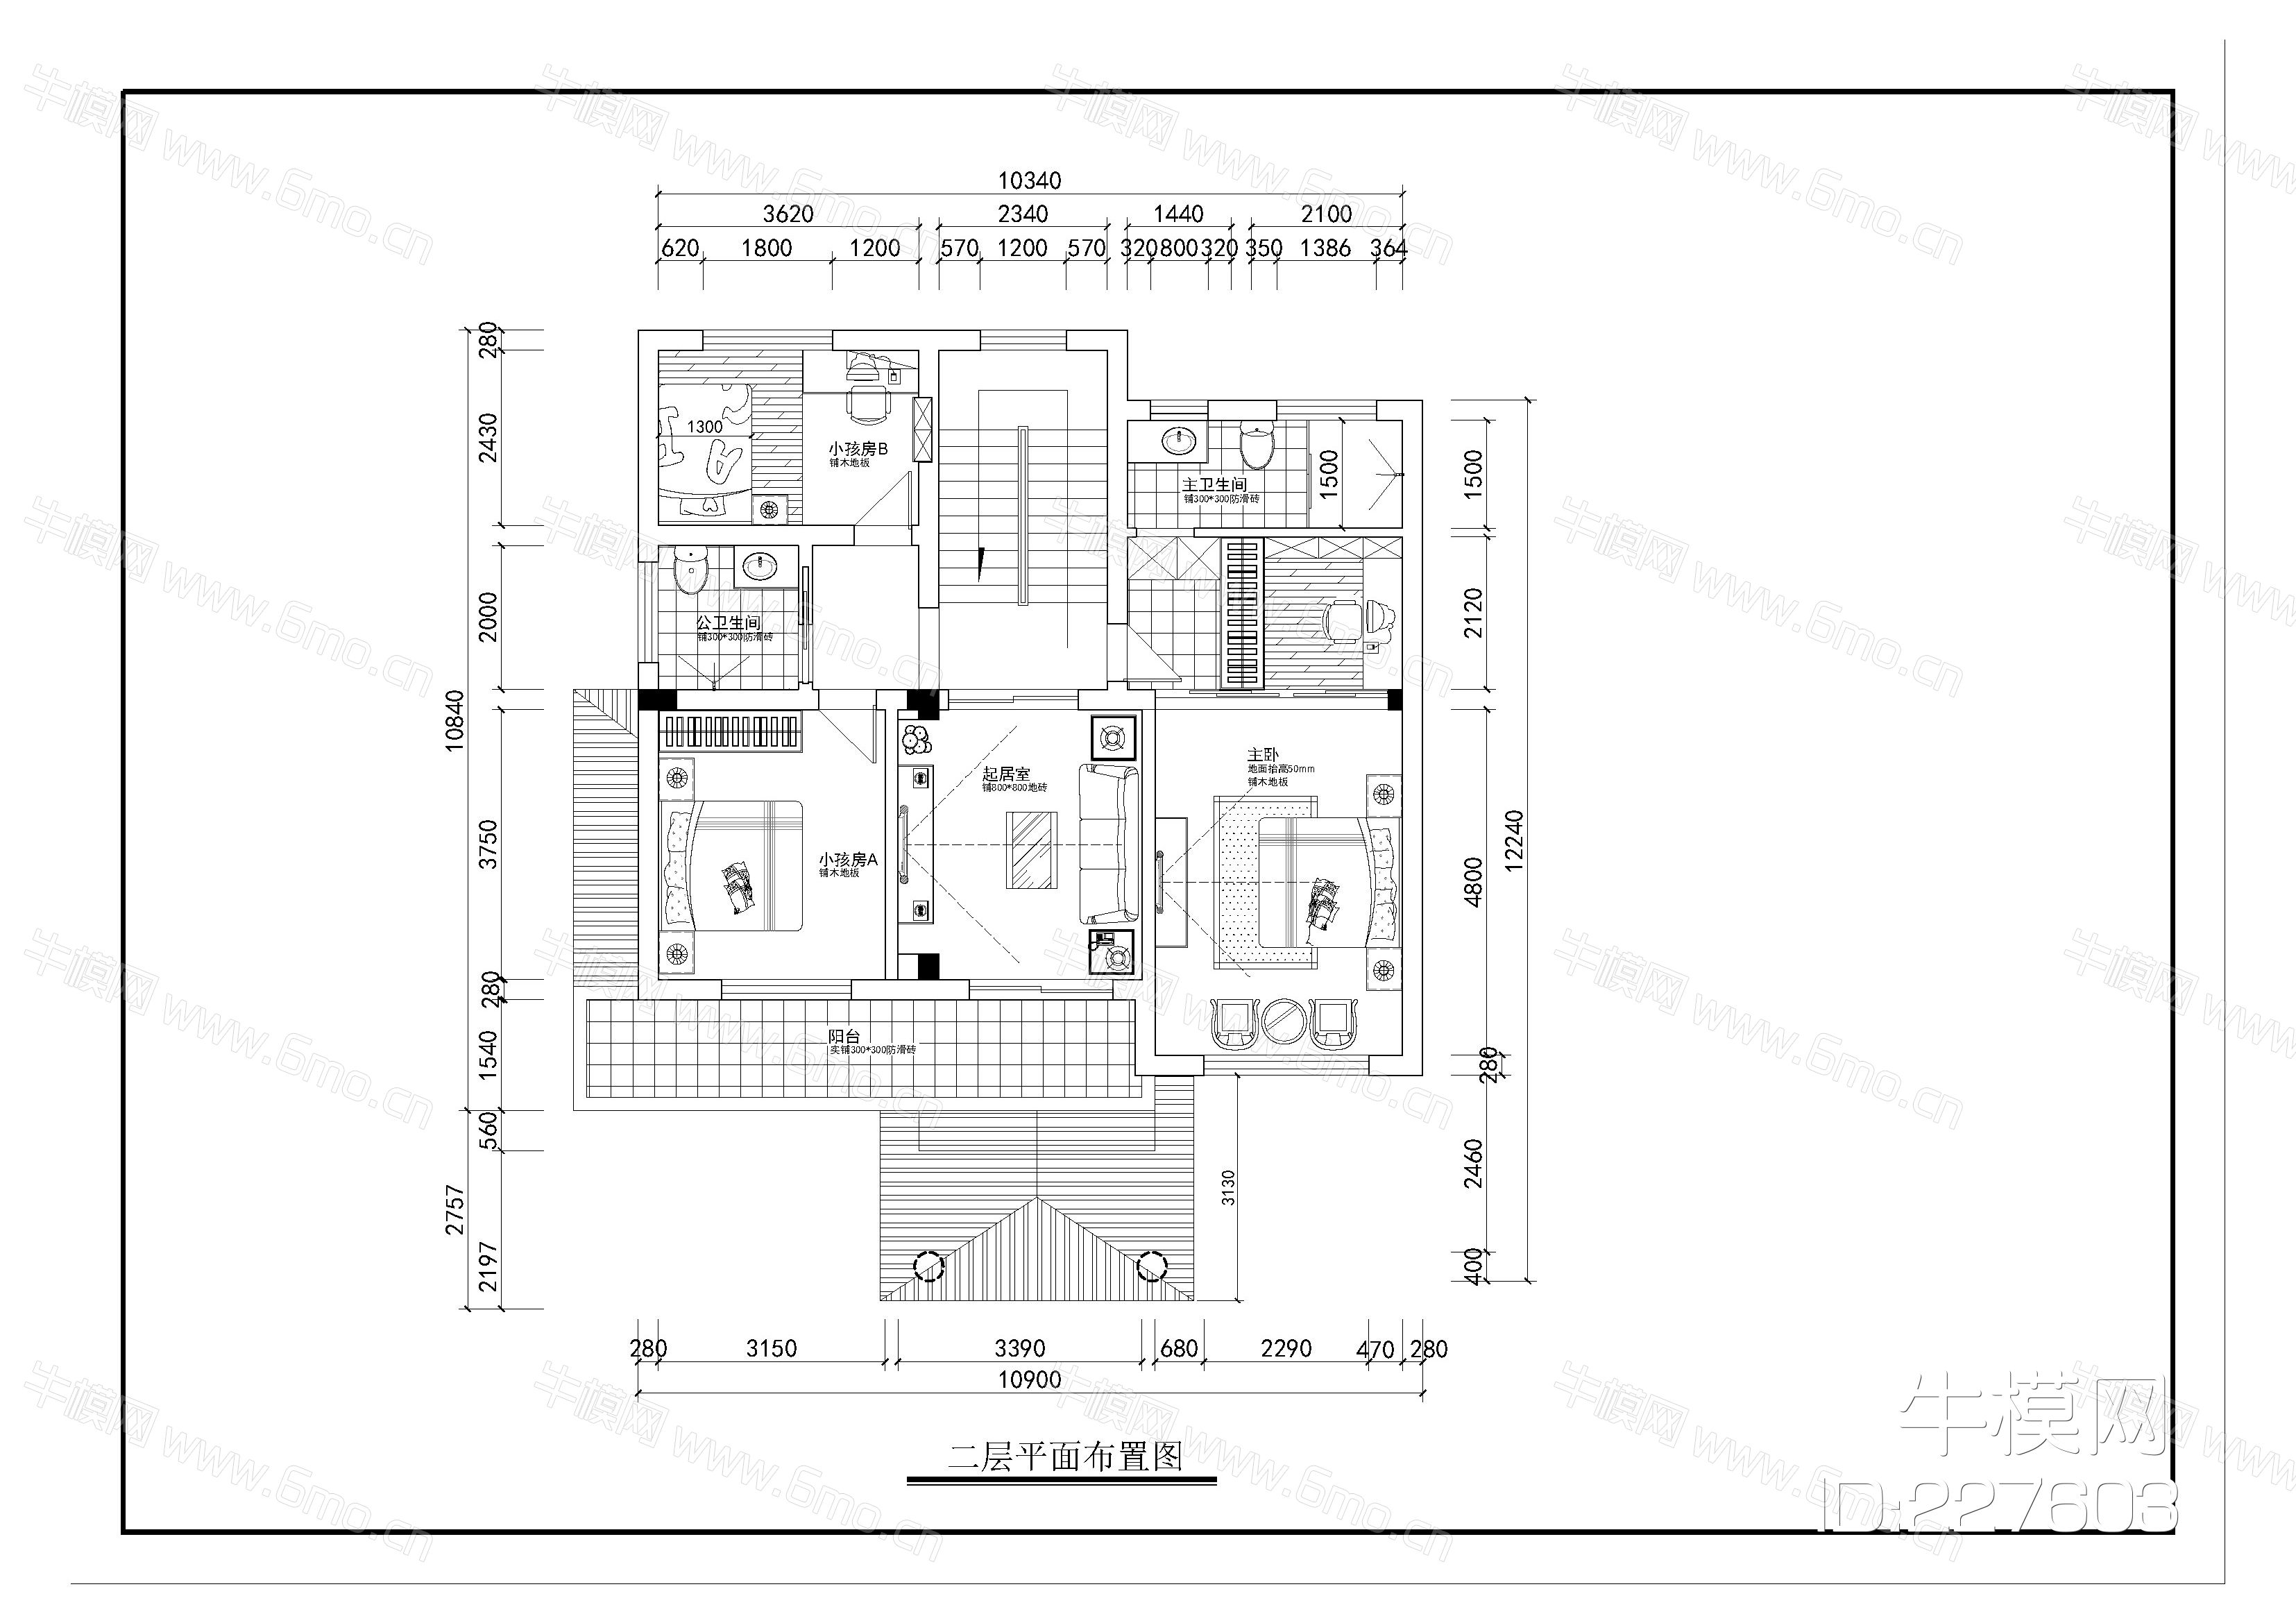 二层别墅建筑施工图纸（含效果图）免费下载 - 别墅图纸 - 土木工程网